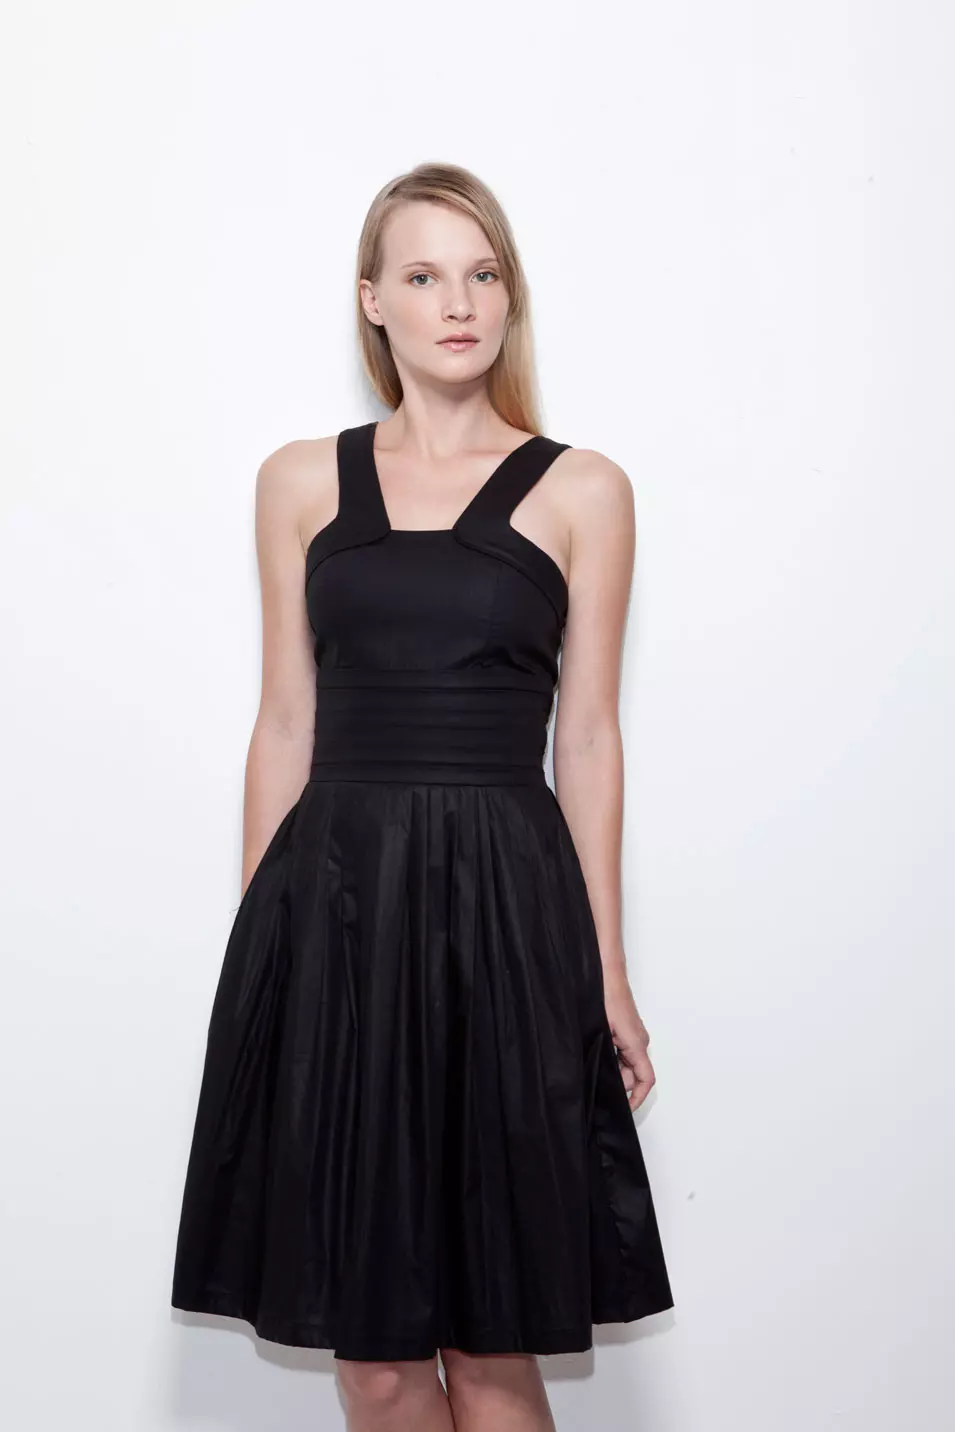 Black Market - שמלת שיפון וכותנה: 690 שקלים (להשיג בעלמה, מתחם התחנה, תל אביב; בנקר, דיזנגוף 210, תל אביב)